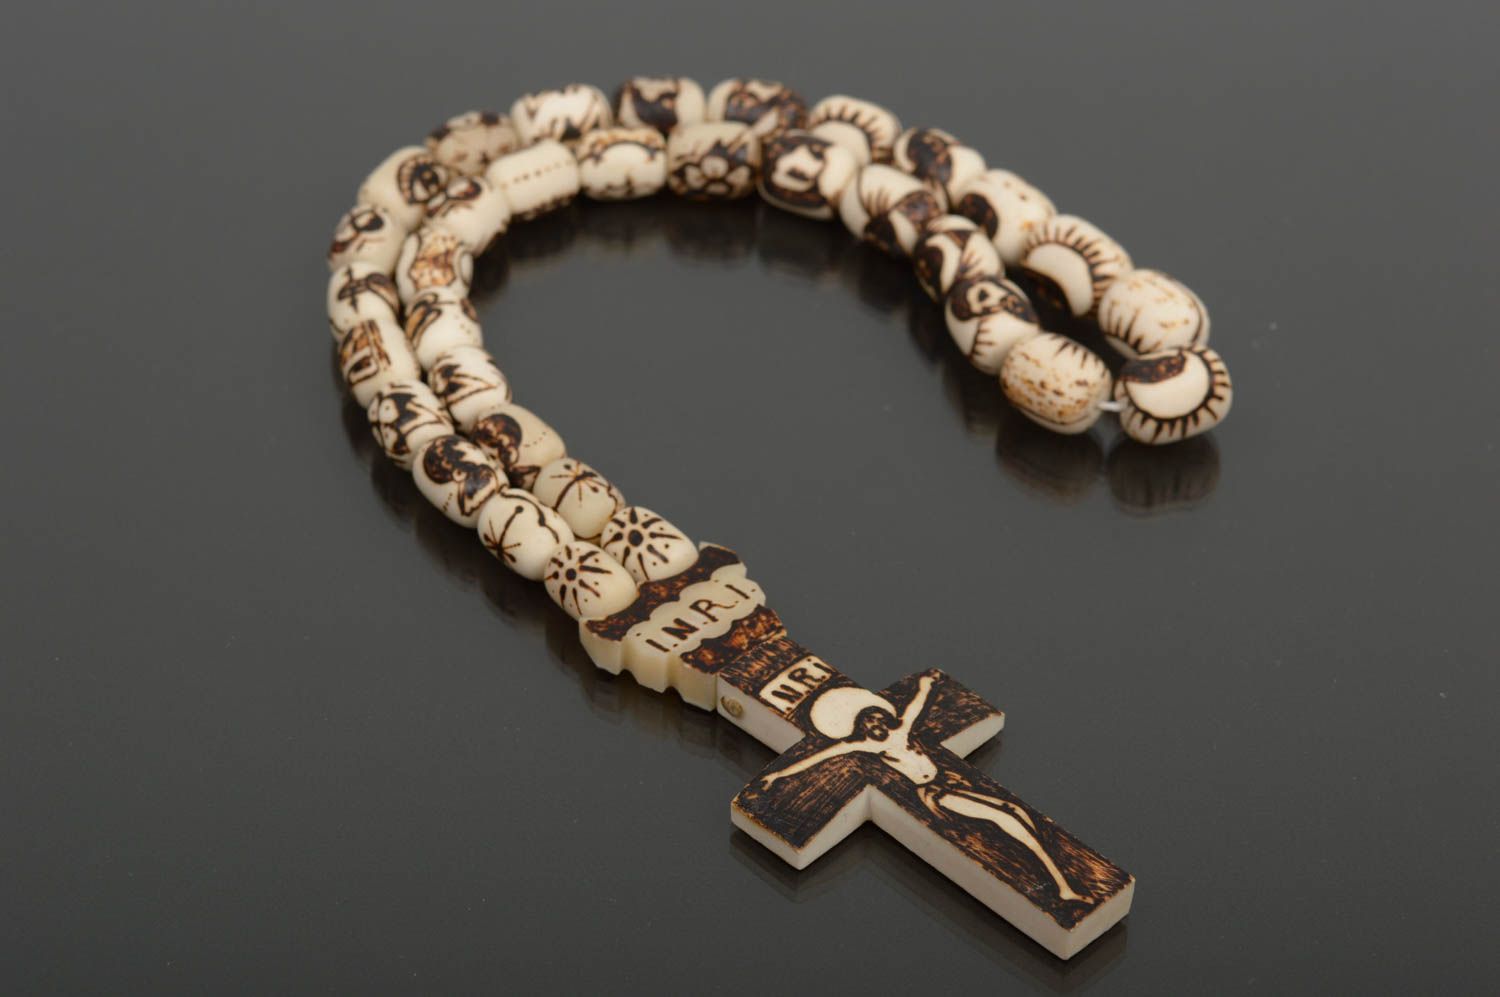 Prayer rope handmade rosary beads designer accessories inspirational gifts photo 1